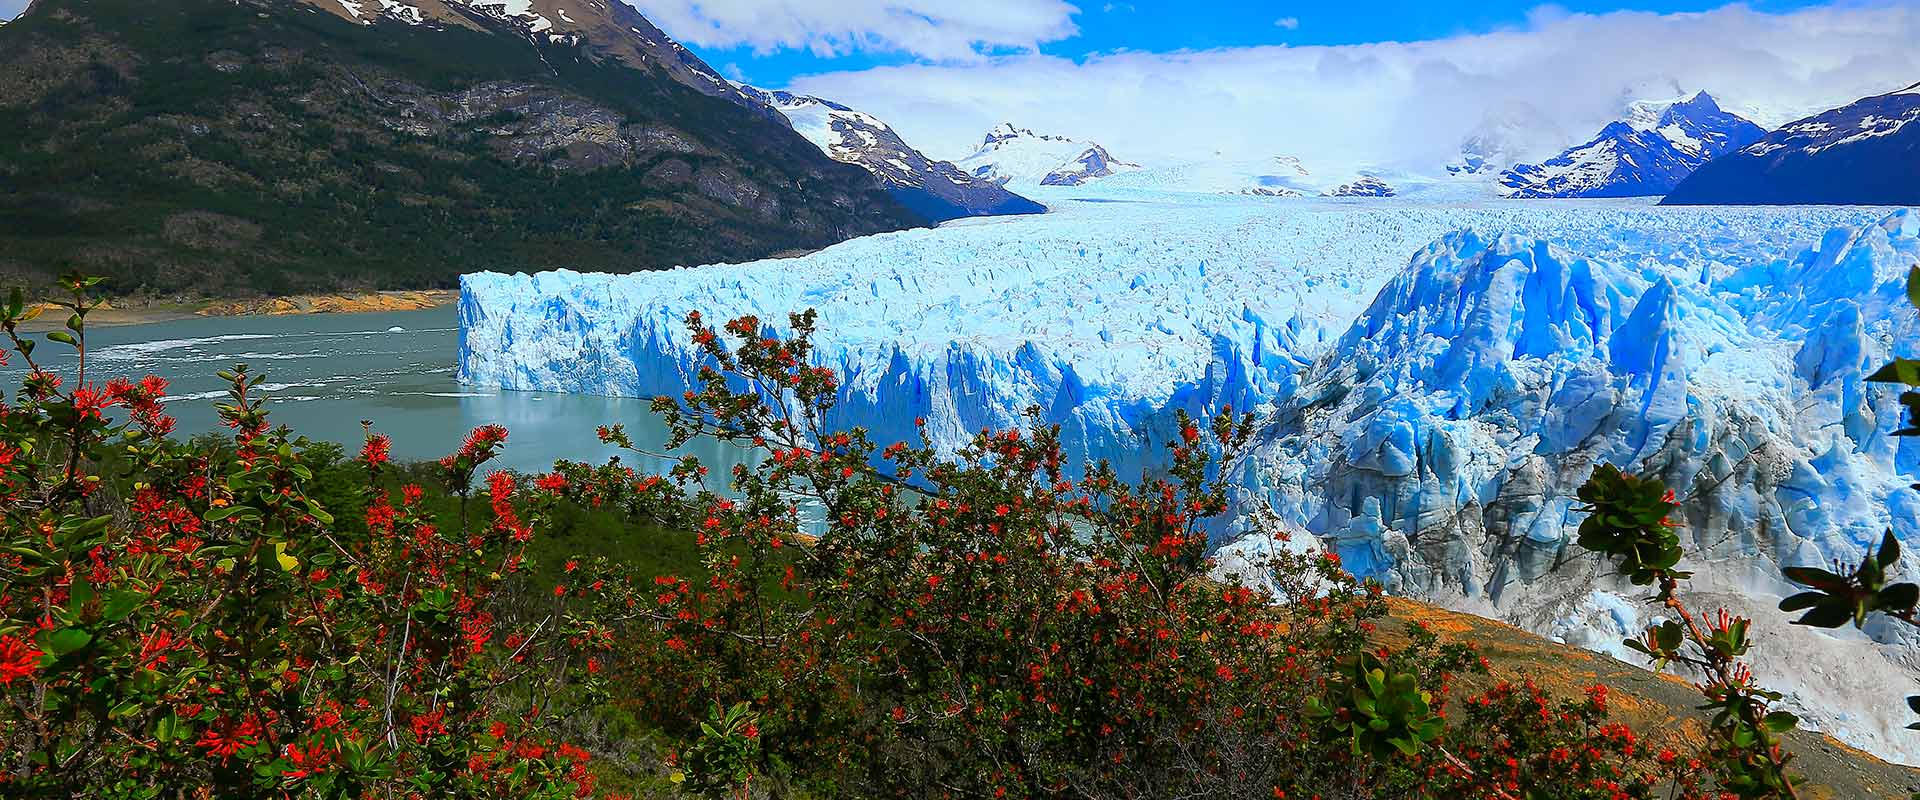 Large glacier, Patagonia